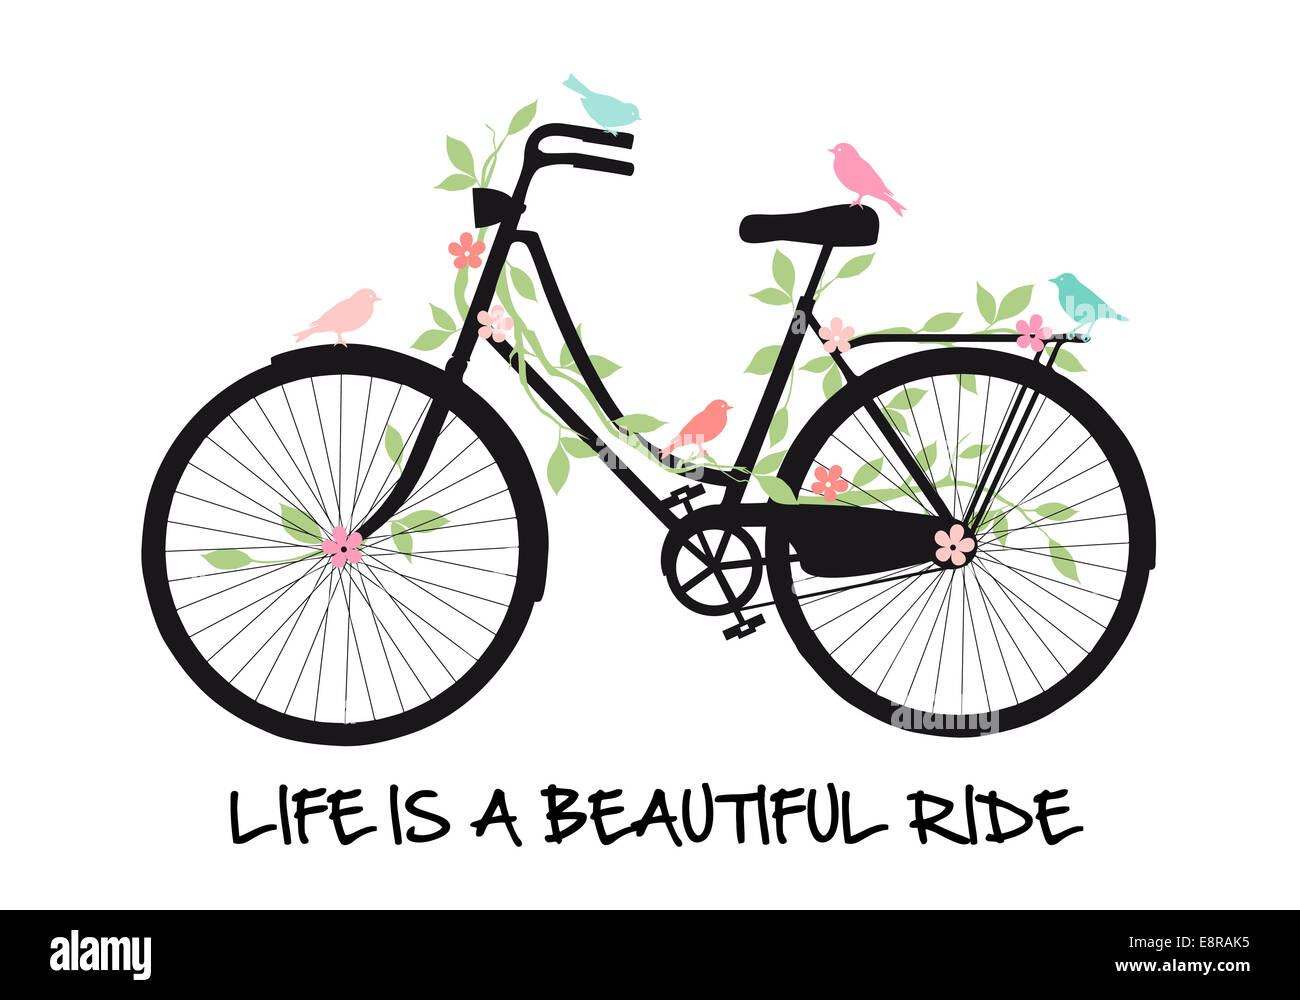 Oldtimer Fahrrad mit Vögel und Blumen, das Leben ist eine schöne Fahrt, Vektor-illustration Stockfoto